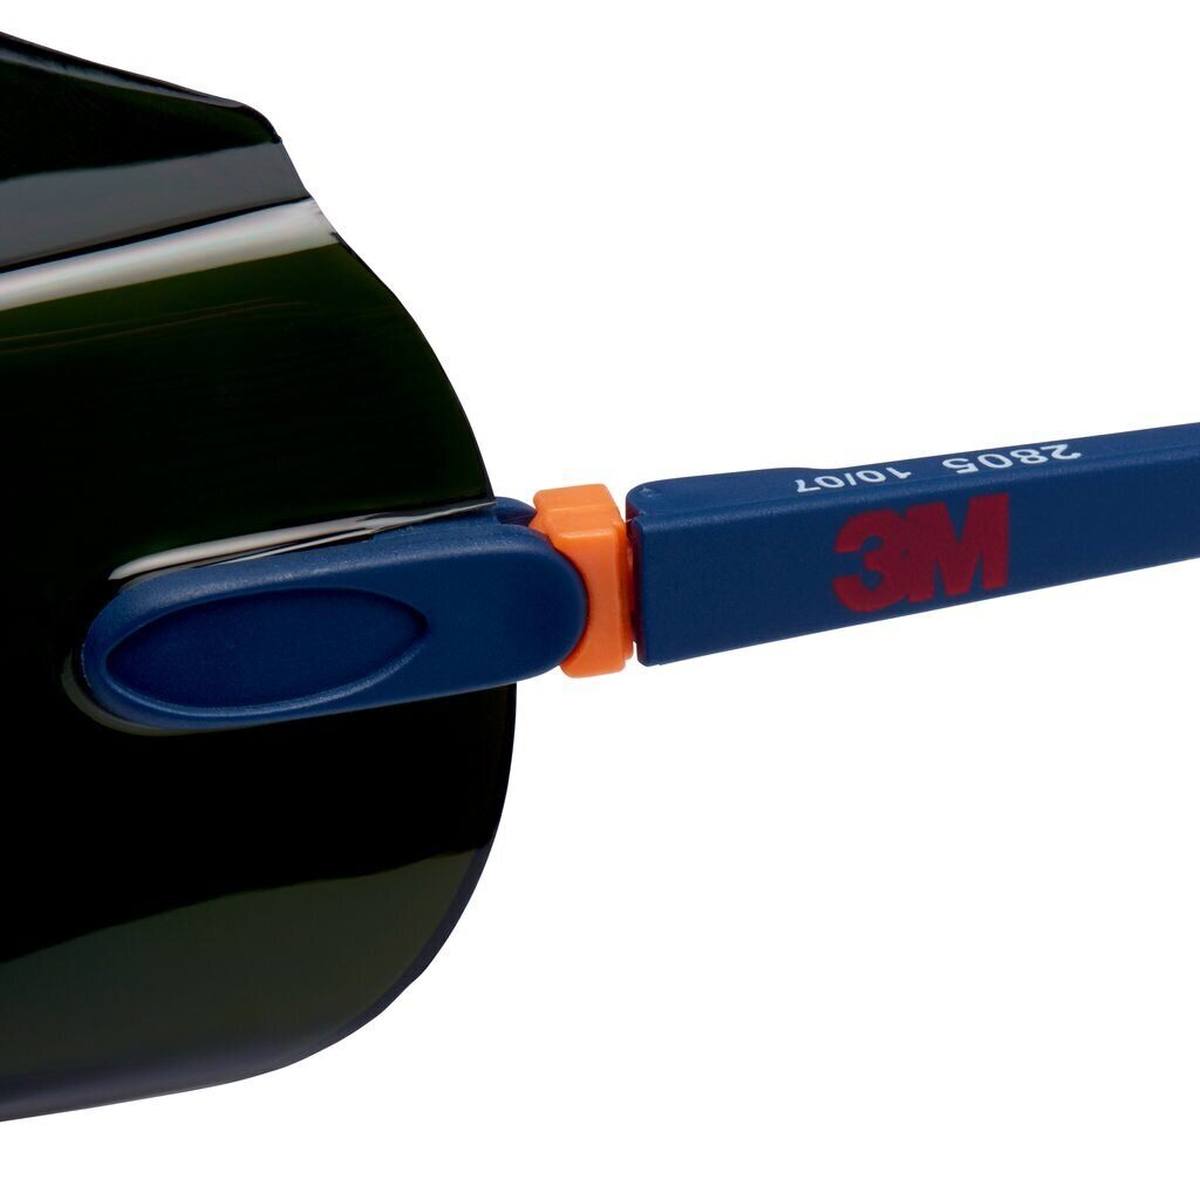 3M 2805 Lunettes de protection AS/UV, PC, teintées en vert, réglables, idéales comme surlunettes pour les porteurs de lunettes, IR 5.0 - convient pour le soudage autogène et le brasage fort